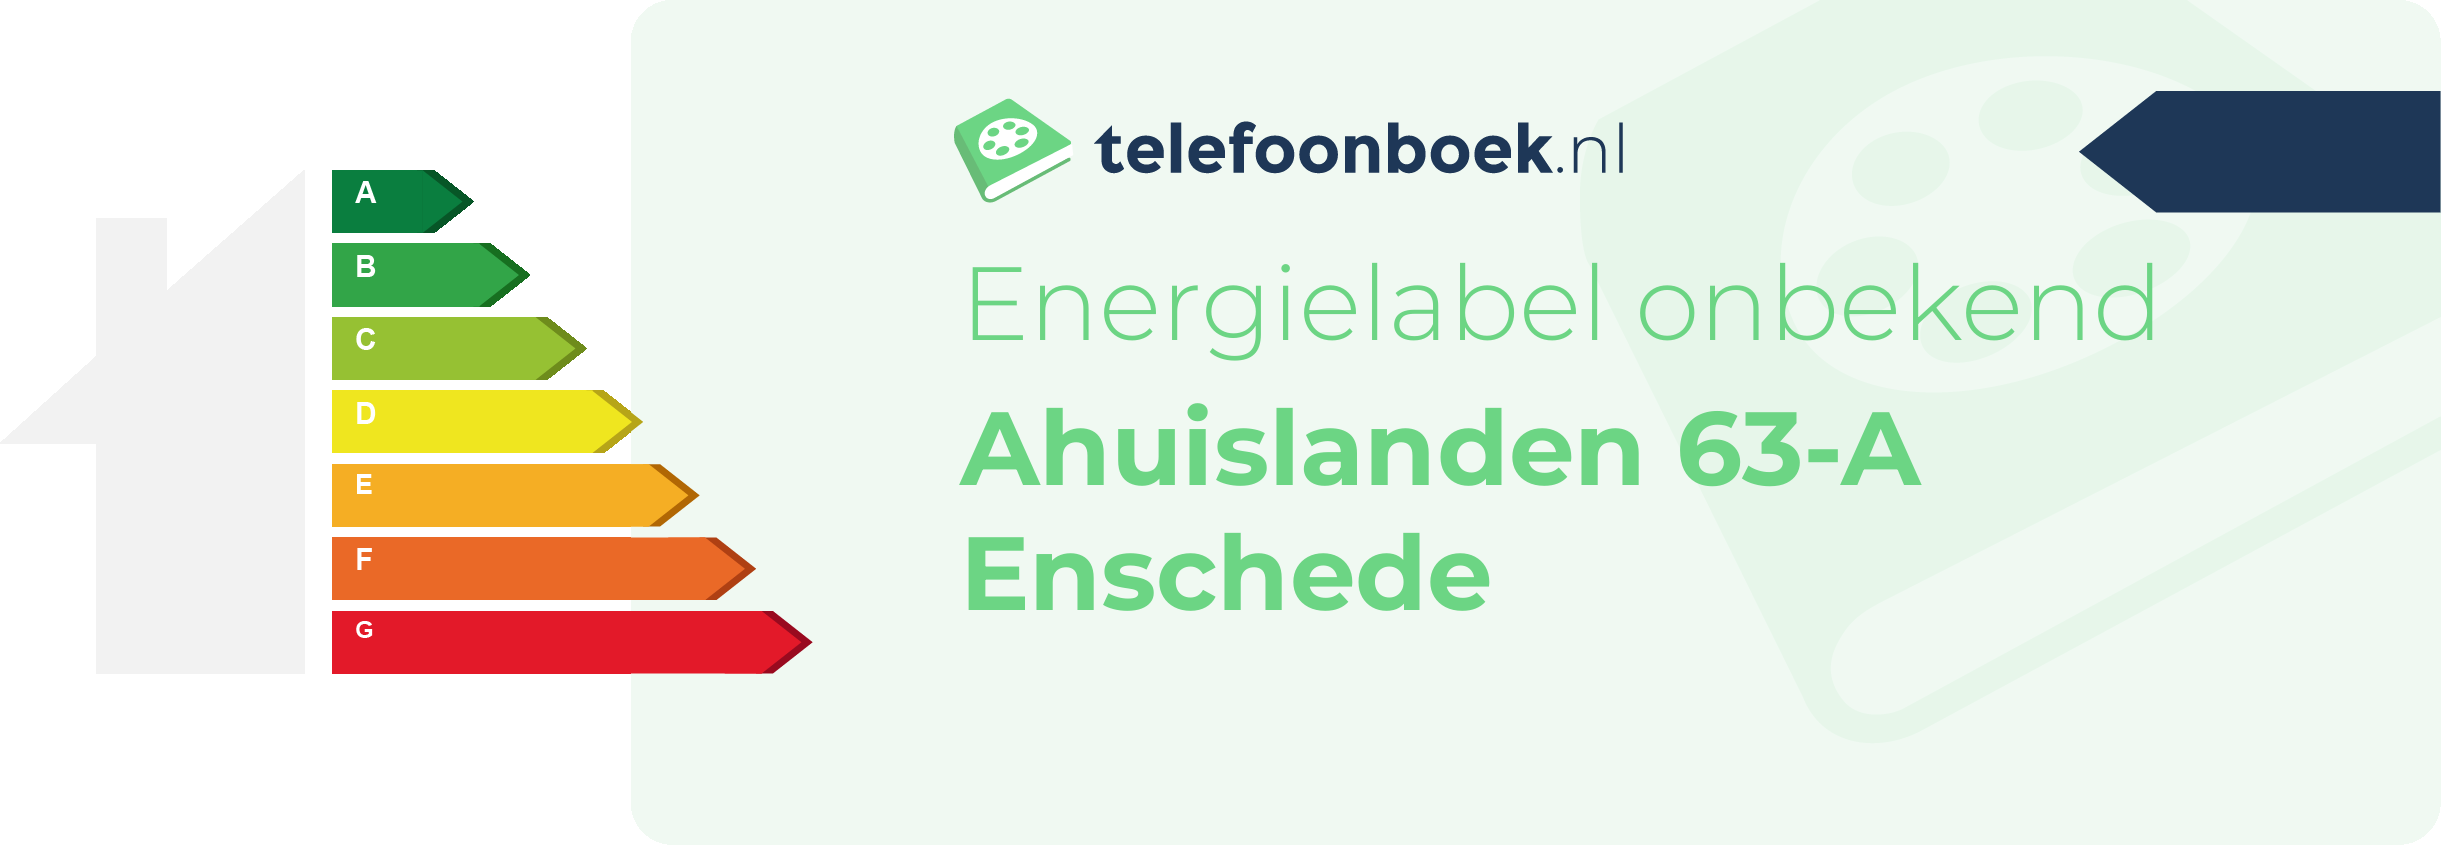 Energielabel Ahuislanden 63-A Enschede